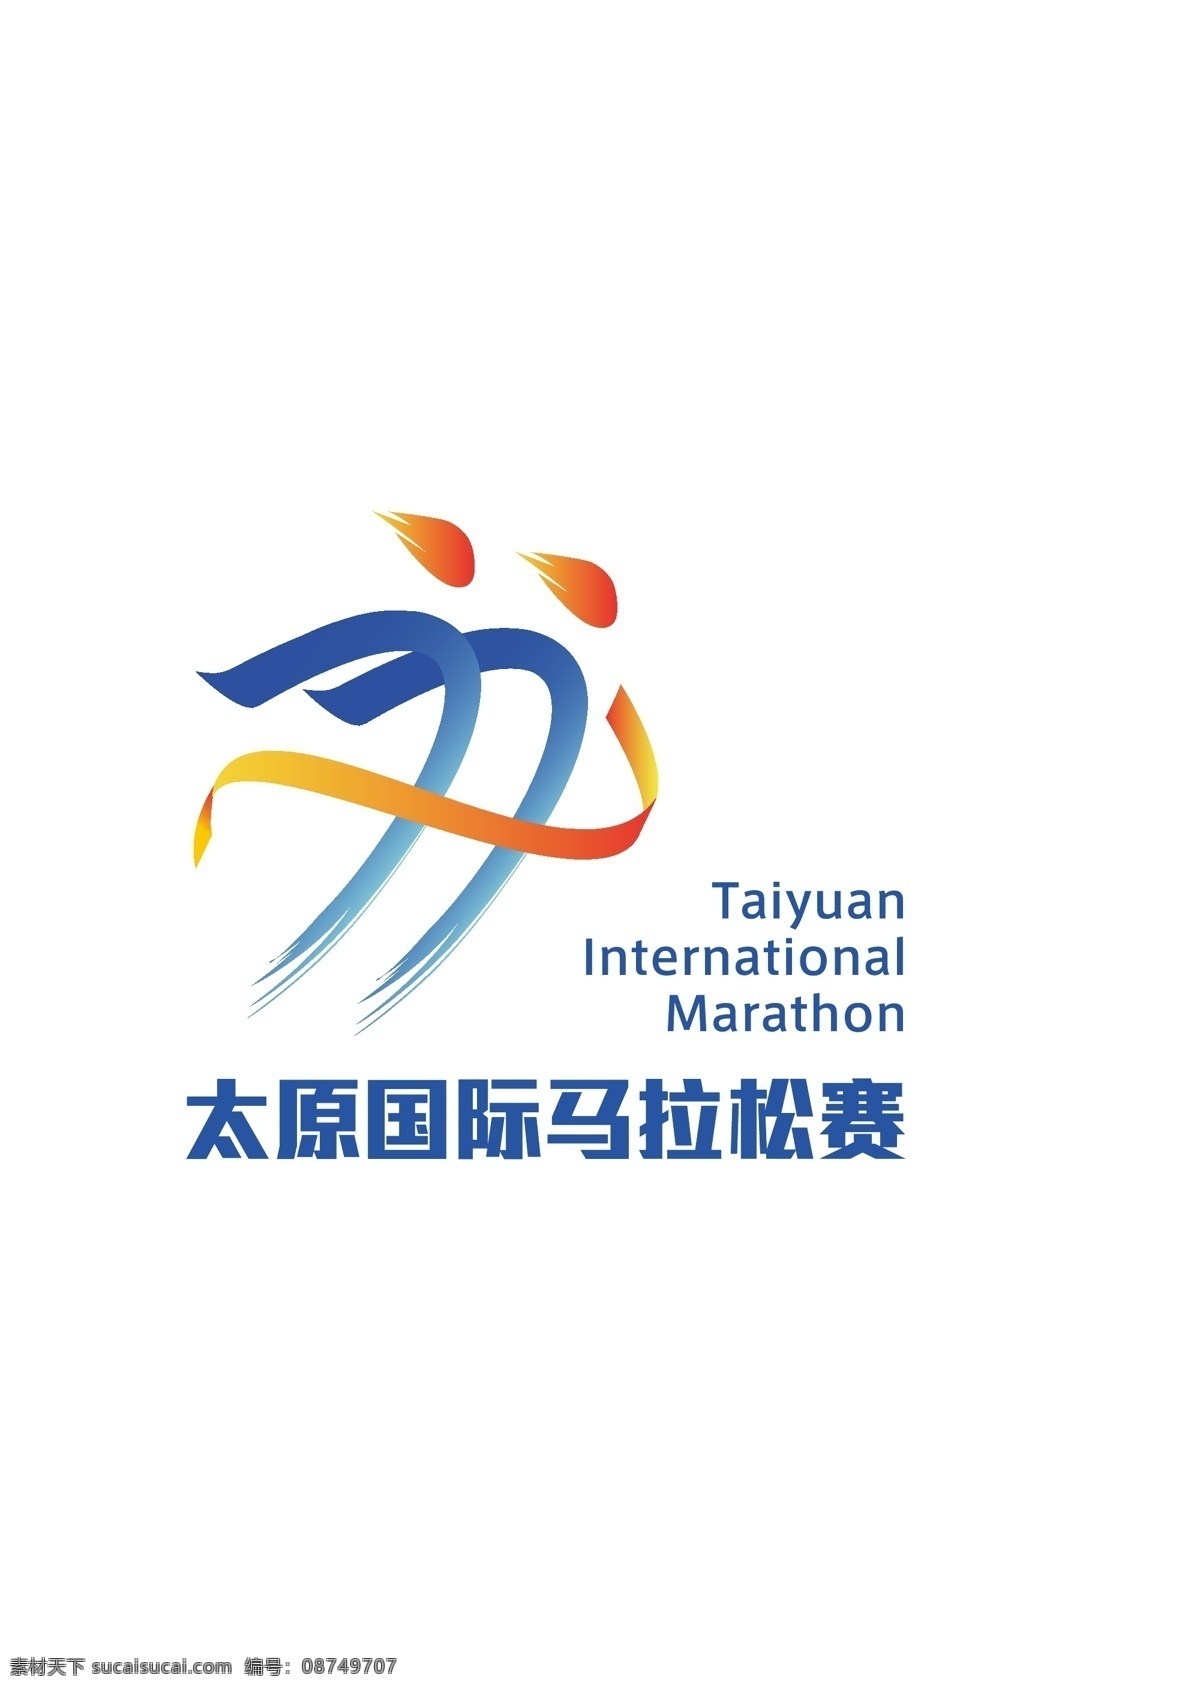 太原马拉松 马拉松 太原国际 marathon 标志 标志图标 公共标识标志